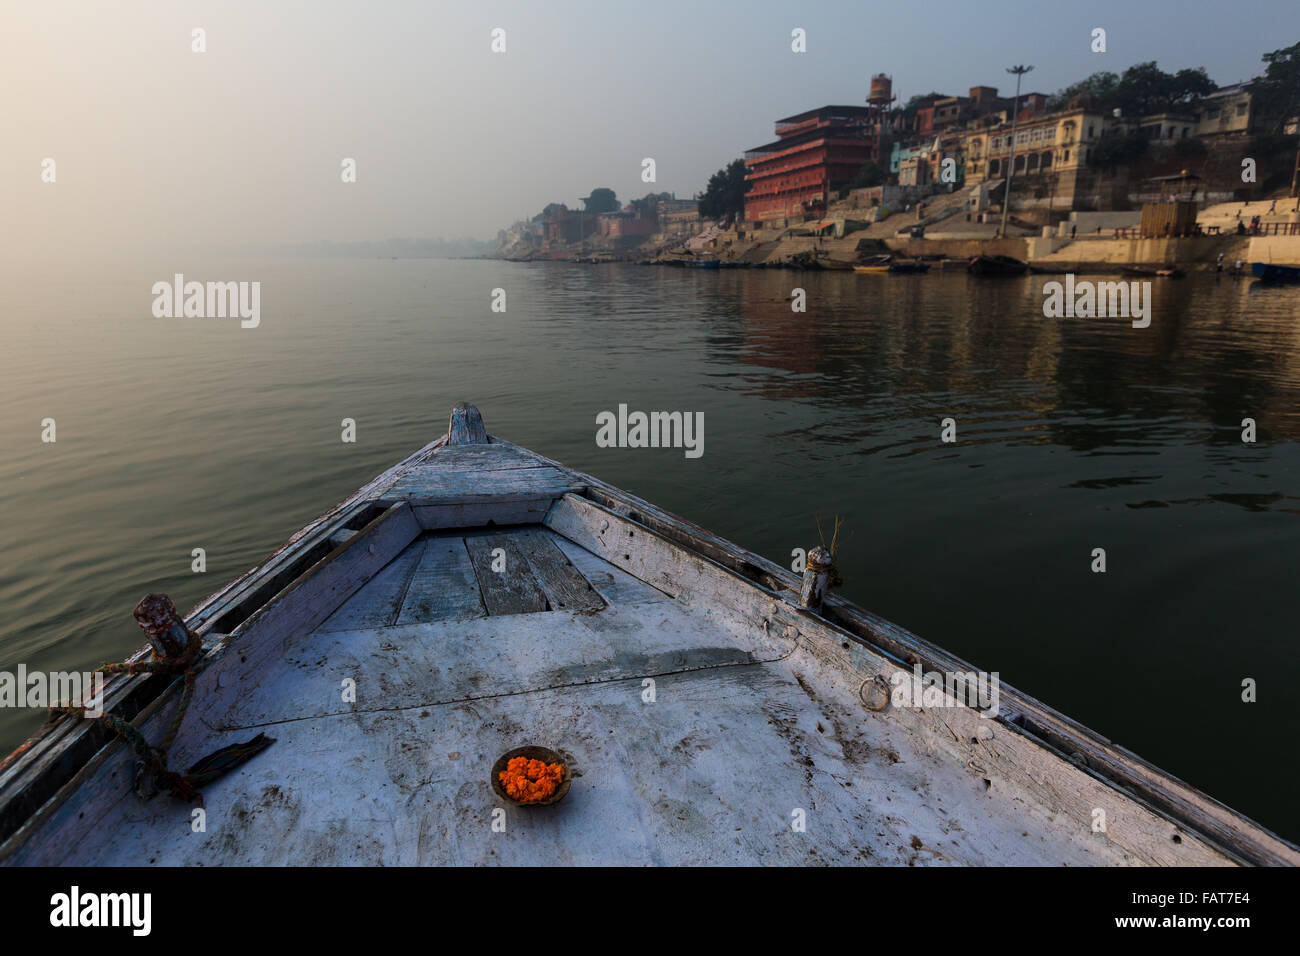 Ganga river, boating, Varanasi Stock Photo